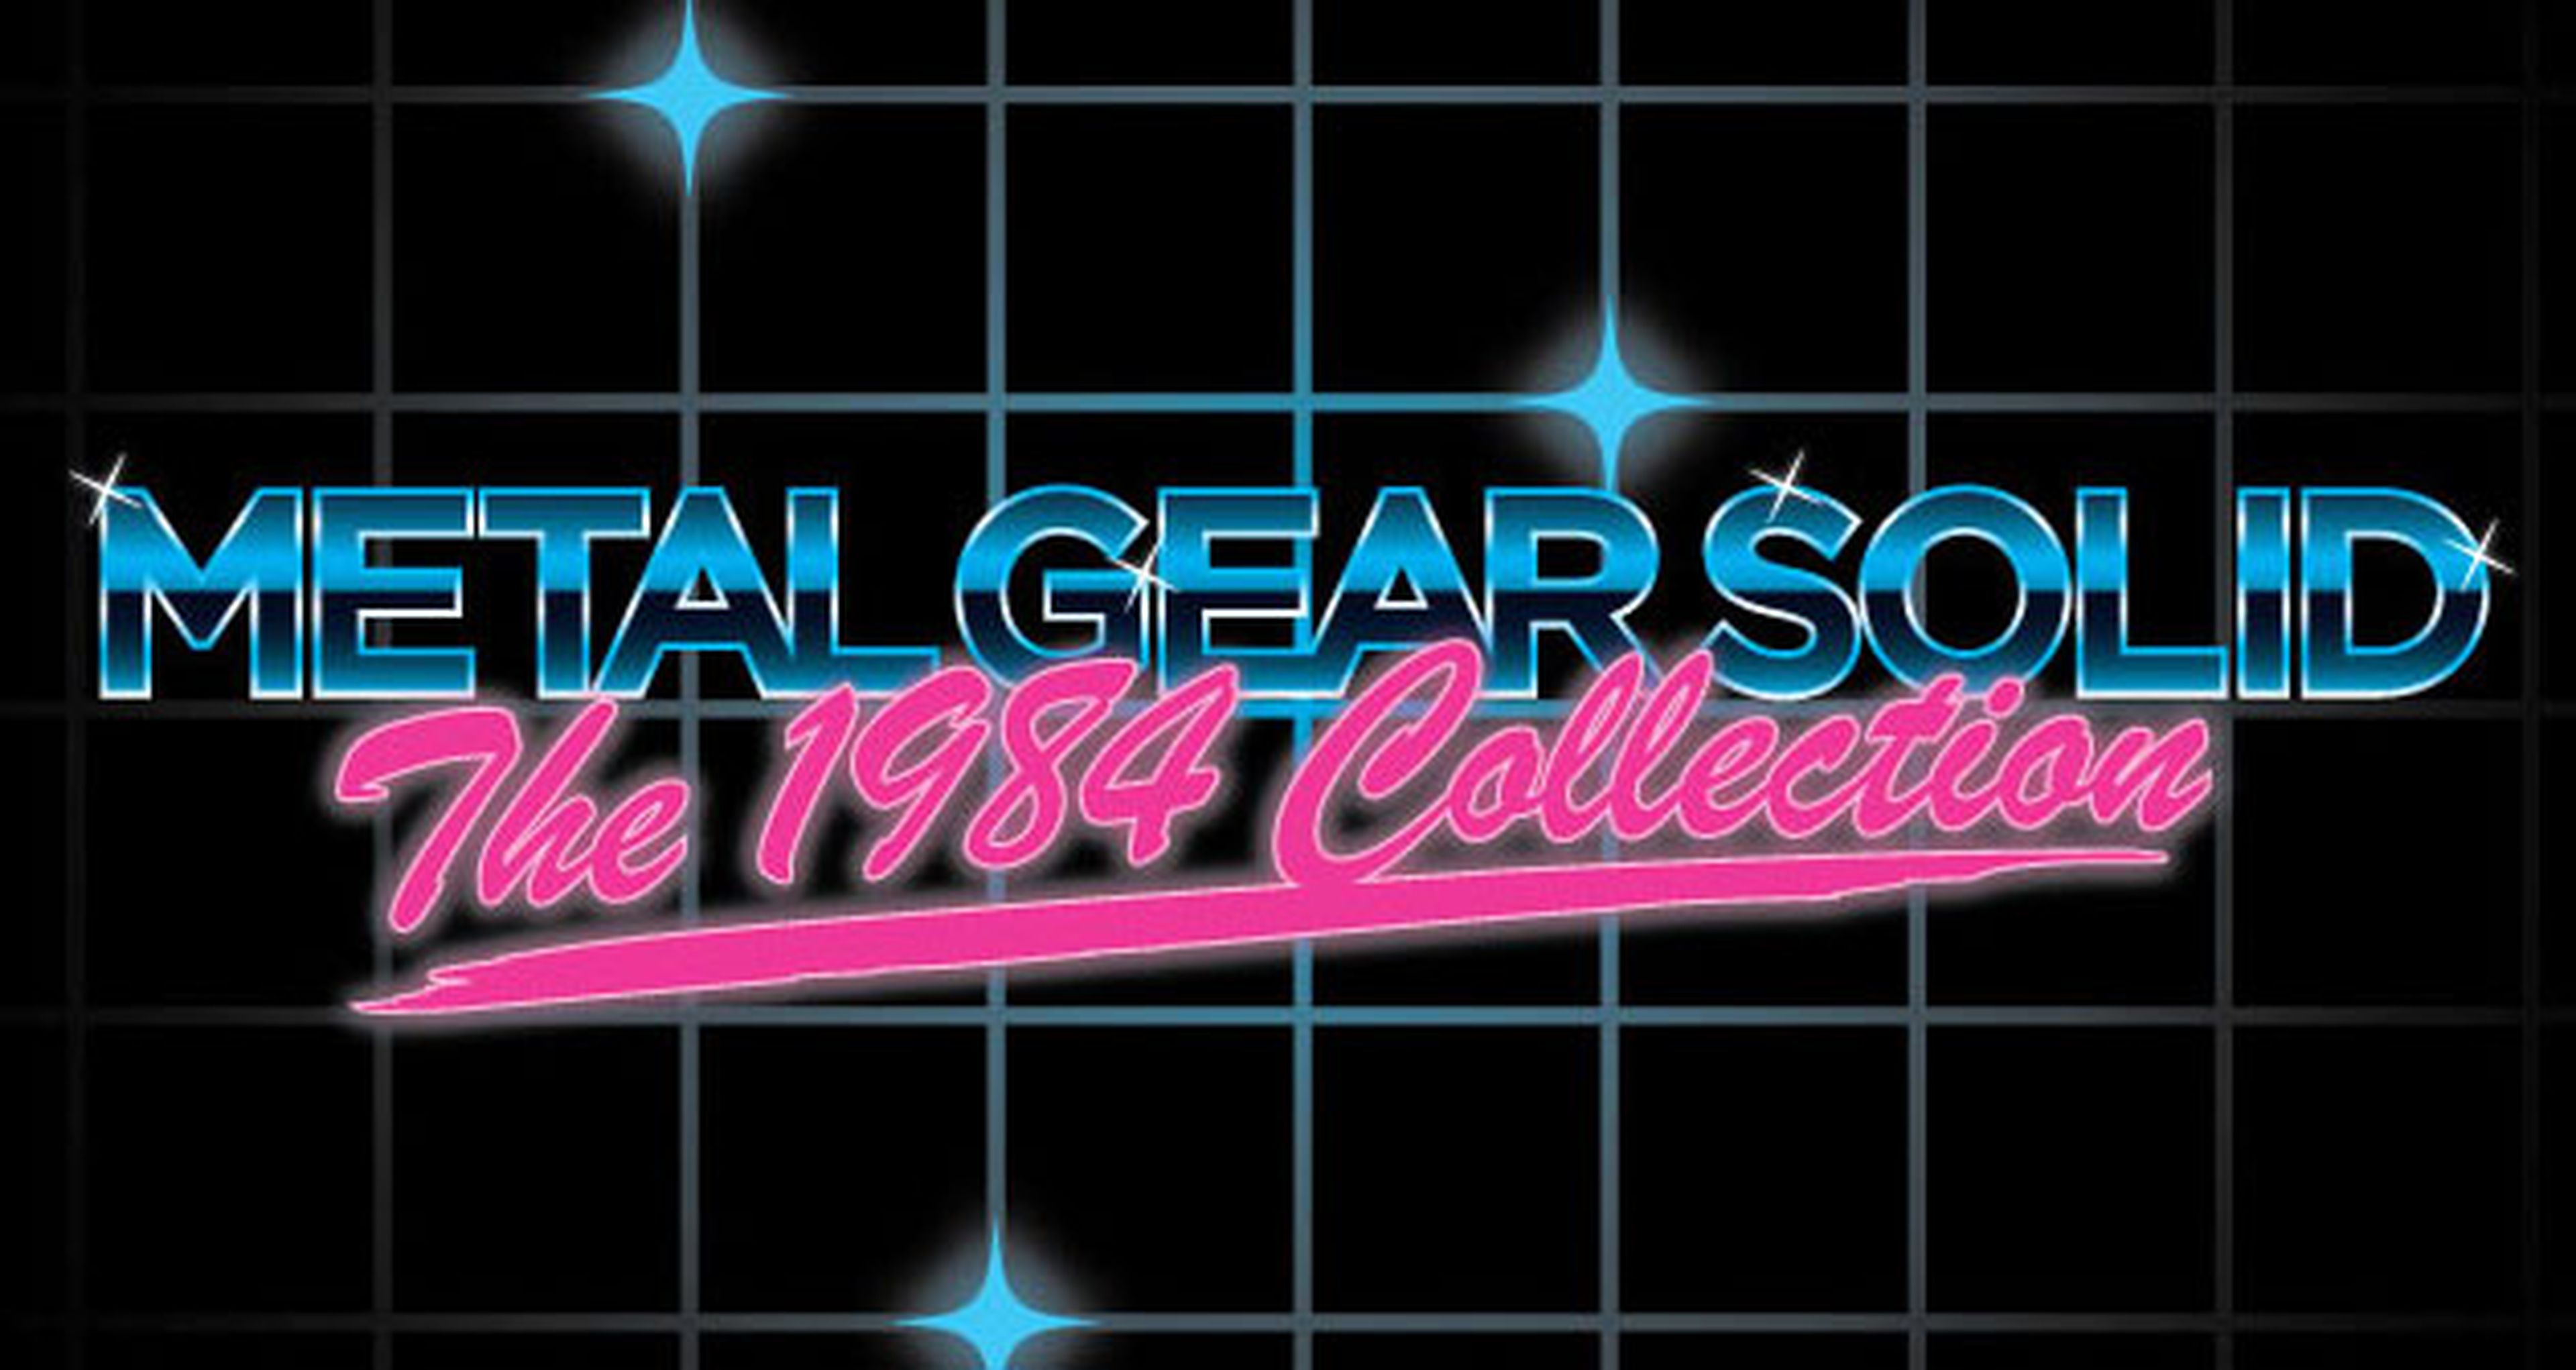 Metal Gear Solid The 1984 Collection, anunciada por Konami